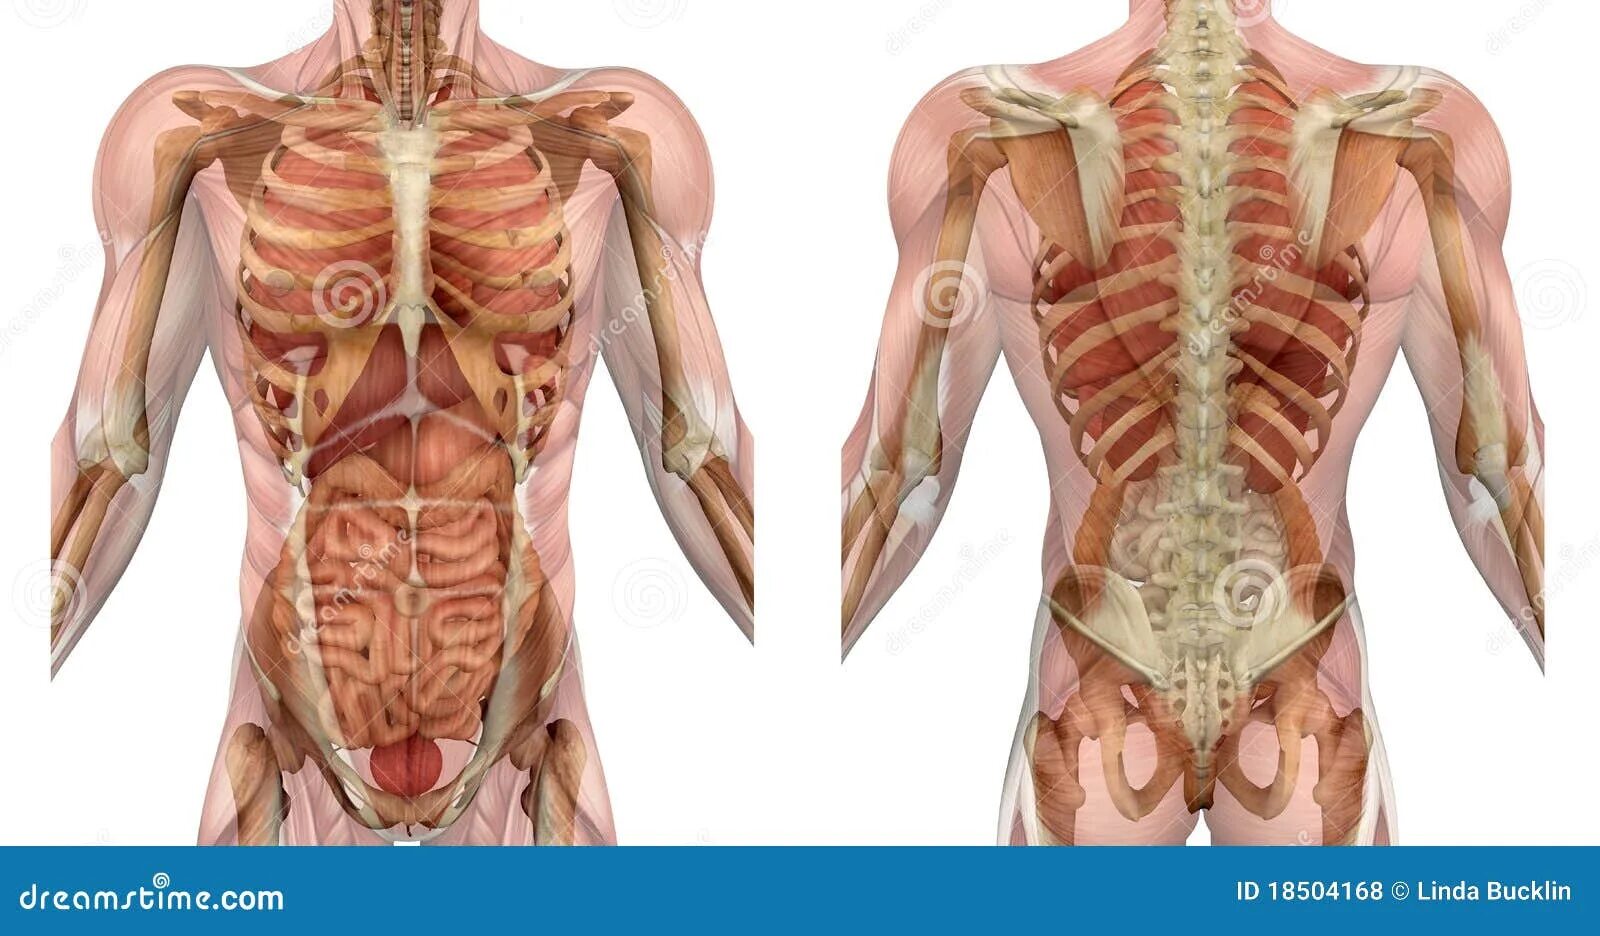 Орган мужчины видео. Внутренние органы со спины. Спина человека анатомия.